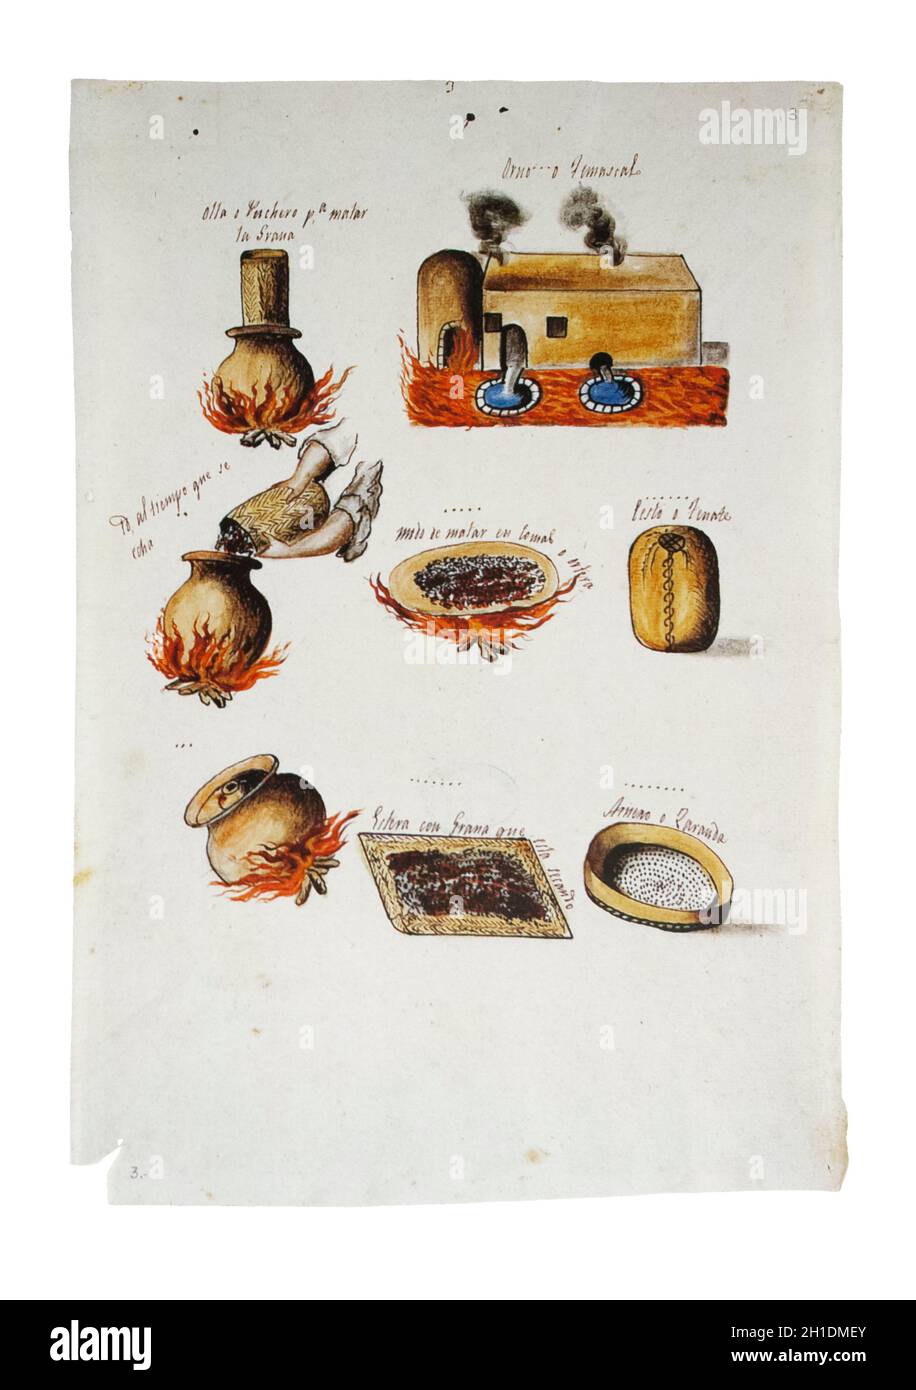 Produzione coccineale in Messico, 1821. Illustrazione del processo. Archivio Generale delle Indie, Siviglia, Spagna Foto Stock